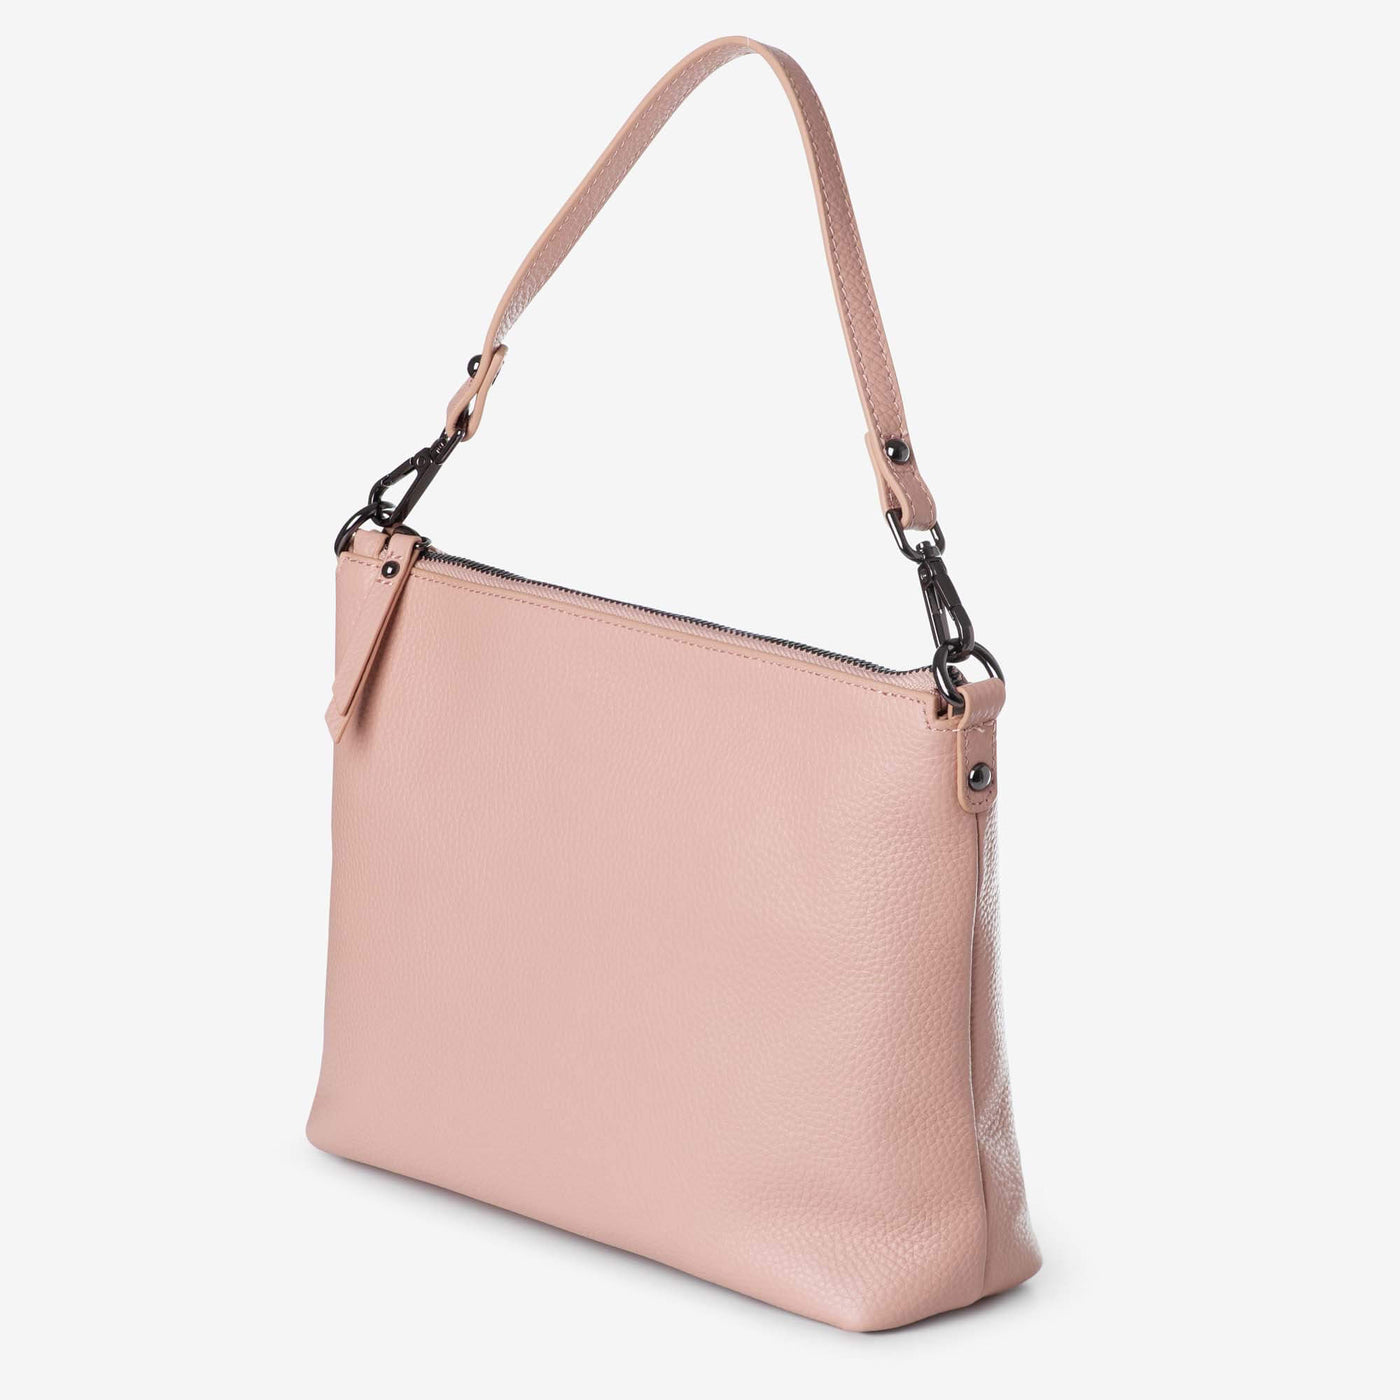 Everyday Leather Crossbody Bag, Leather Key Ring + Bottle Gift Set – Blush